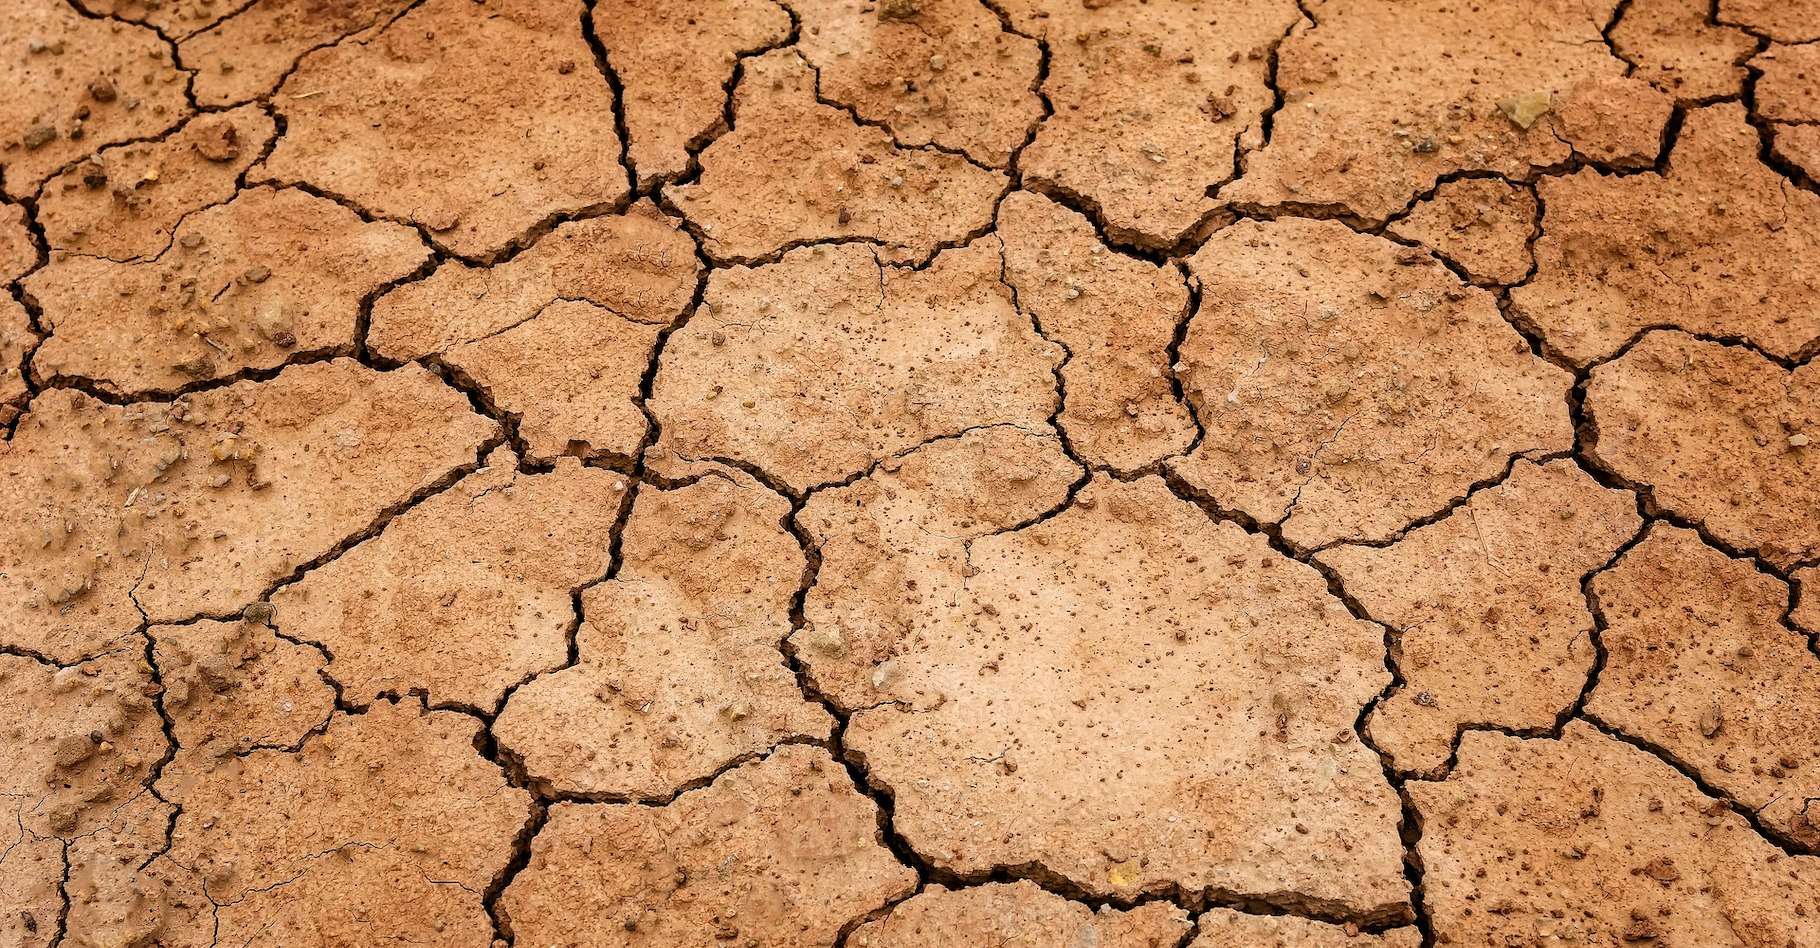     La Martinique est placée en situation de « Crise sécheresse »

